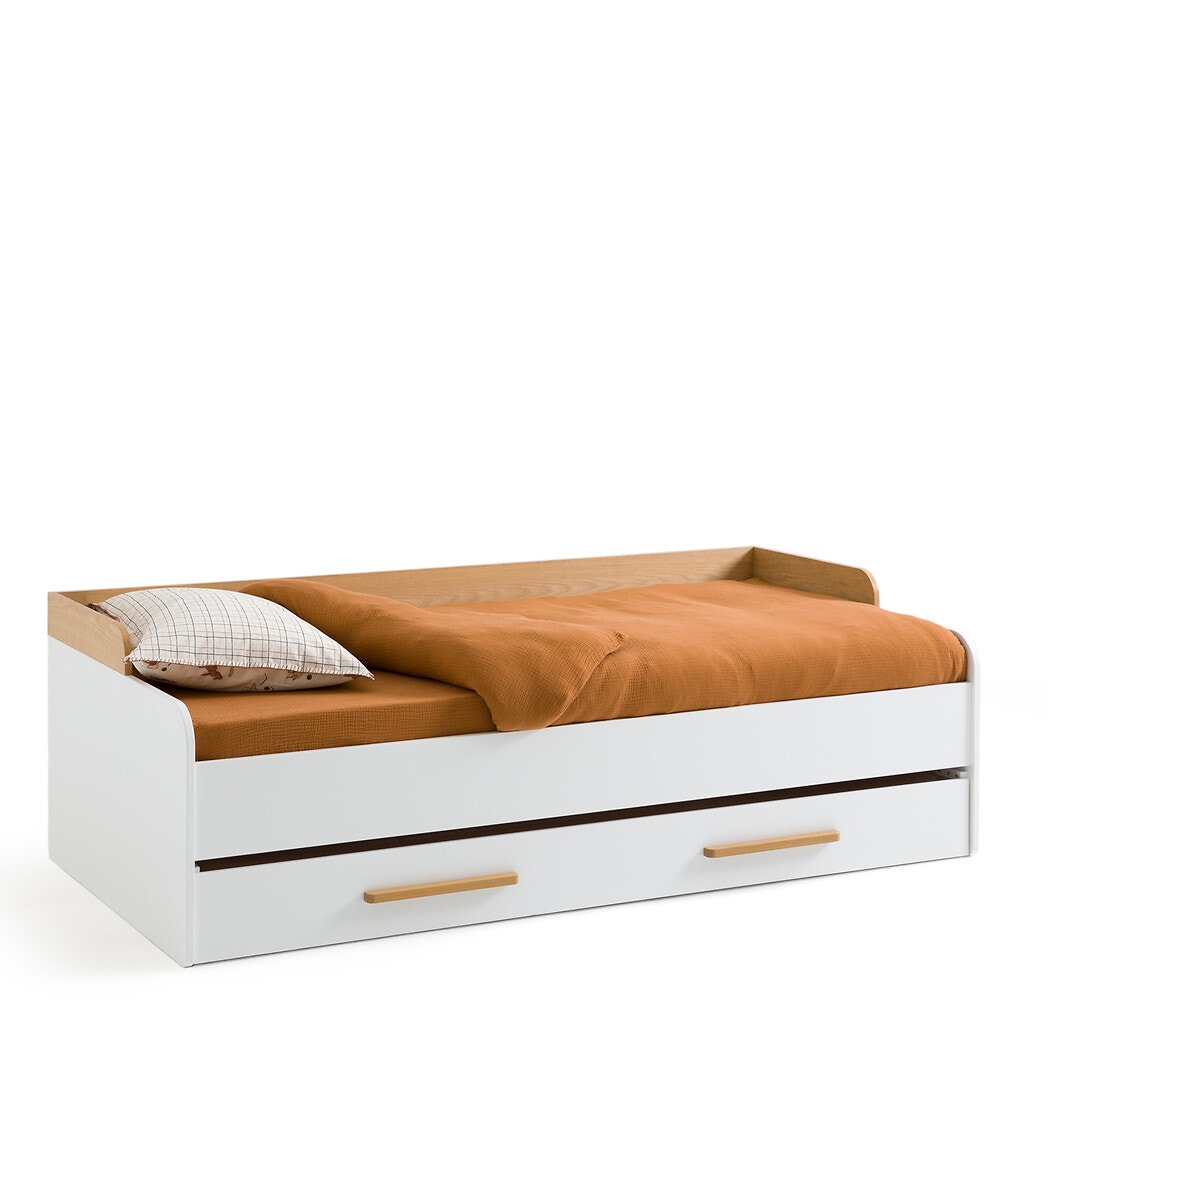 Καναπές κρεβάτι με τάβλες και δεύτερο συρόμενο κρεβάτι, Arturo